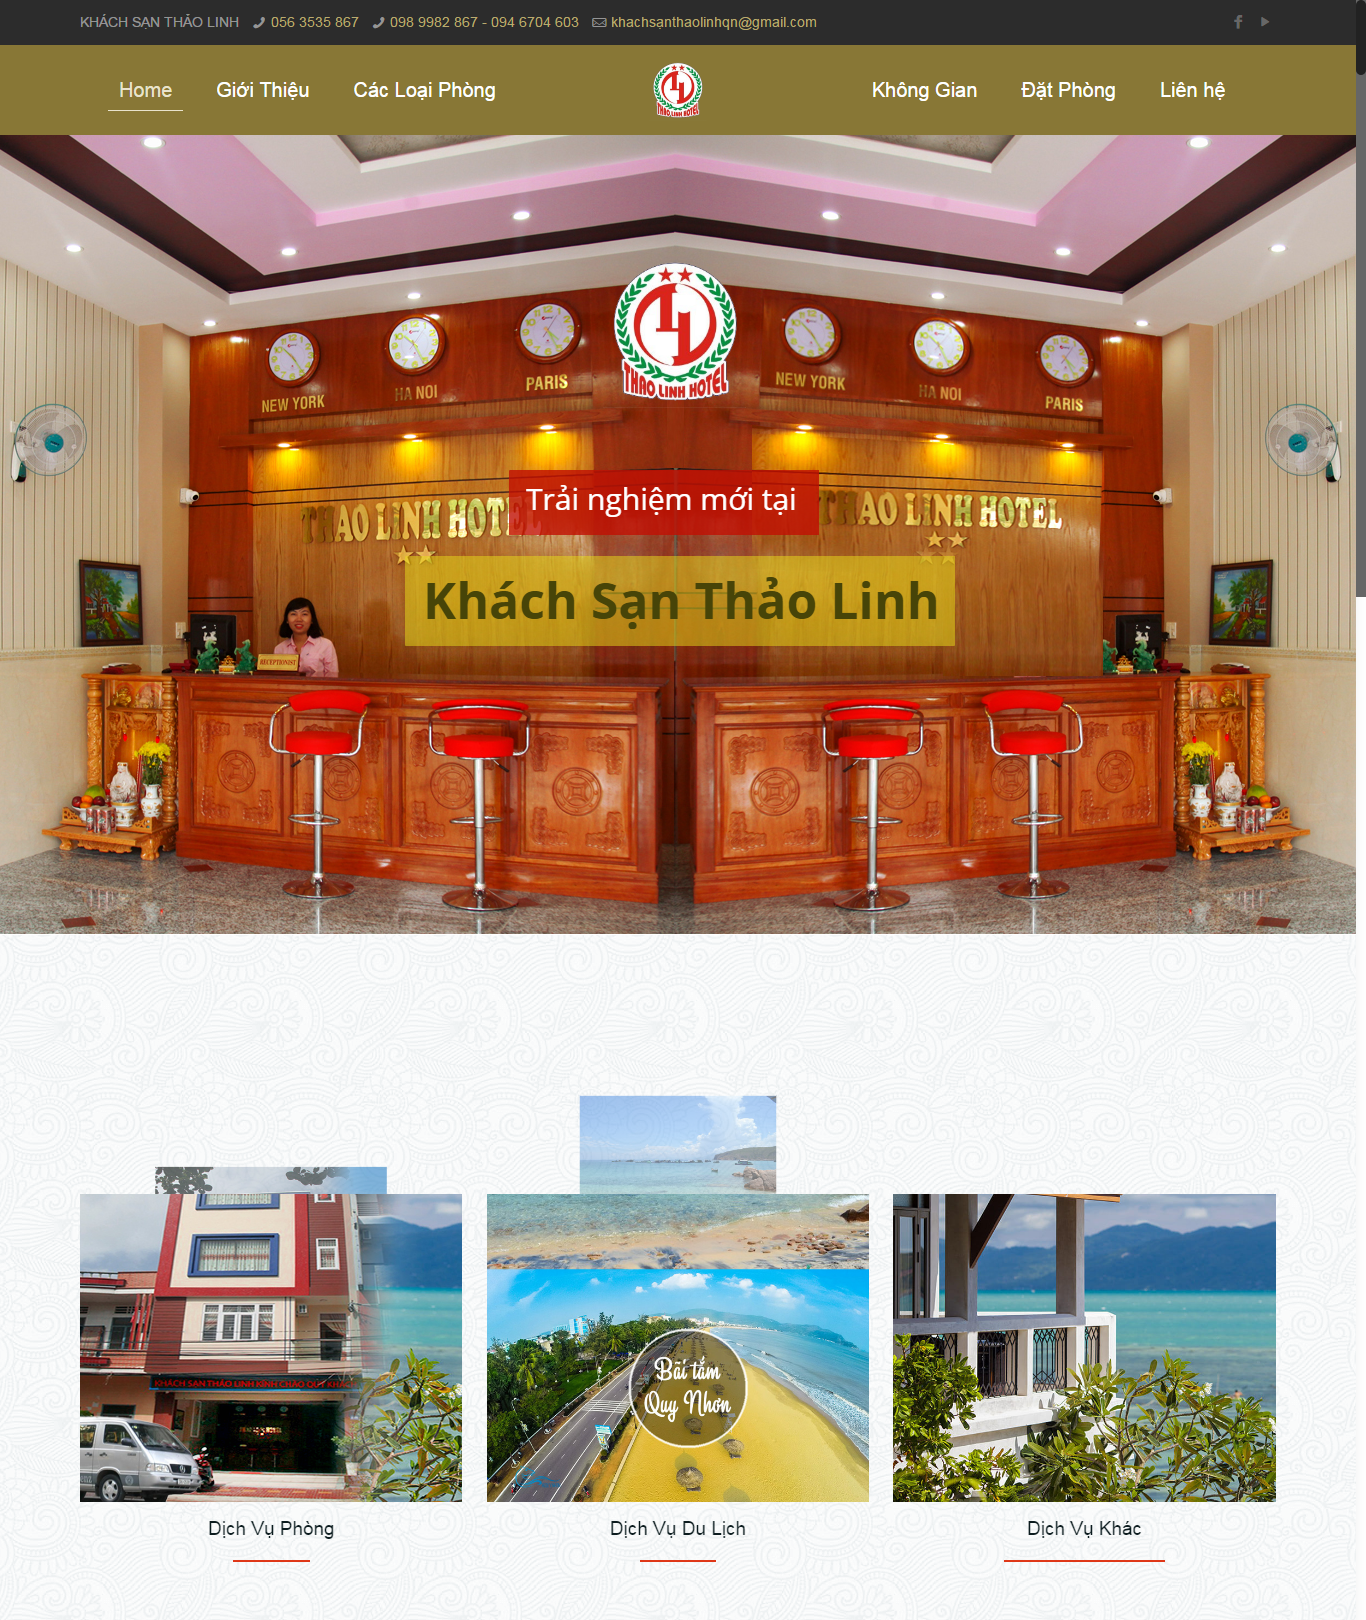 Khách sạn Thảo Linh1